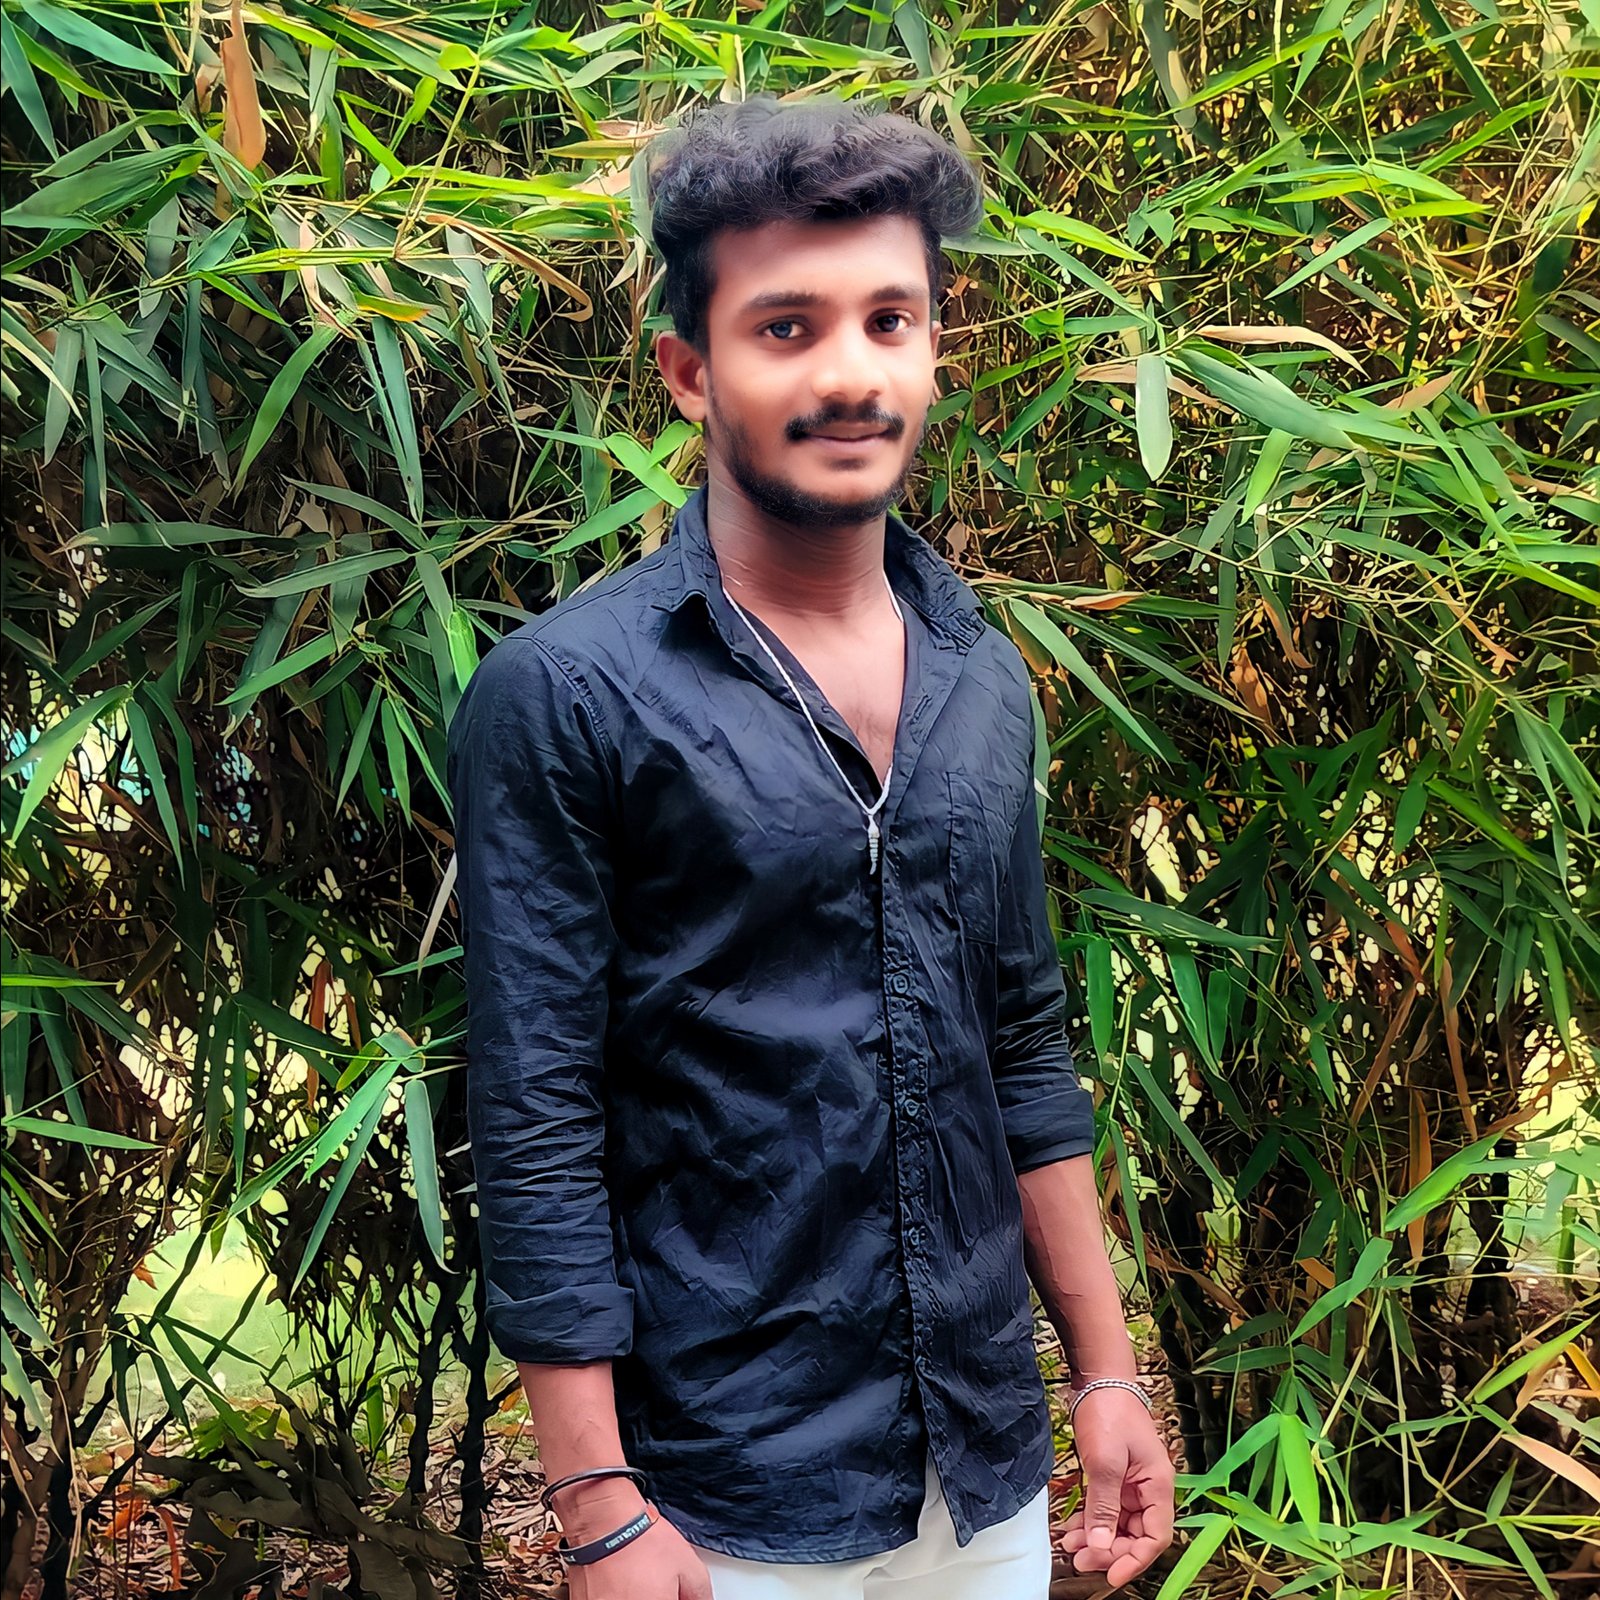 sundarapu_vijay_kumar